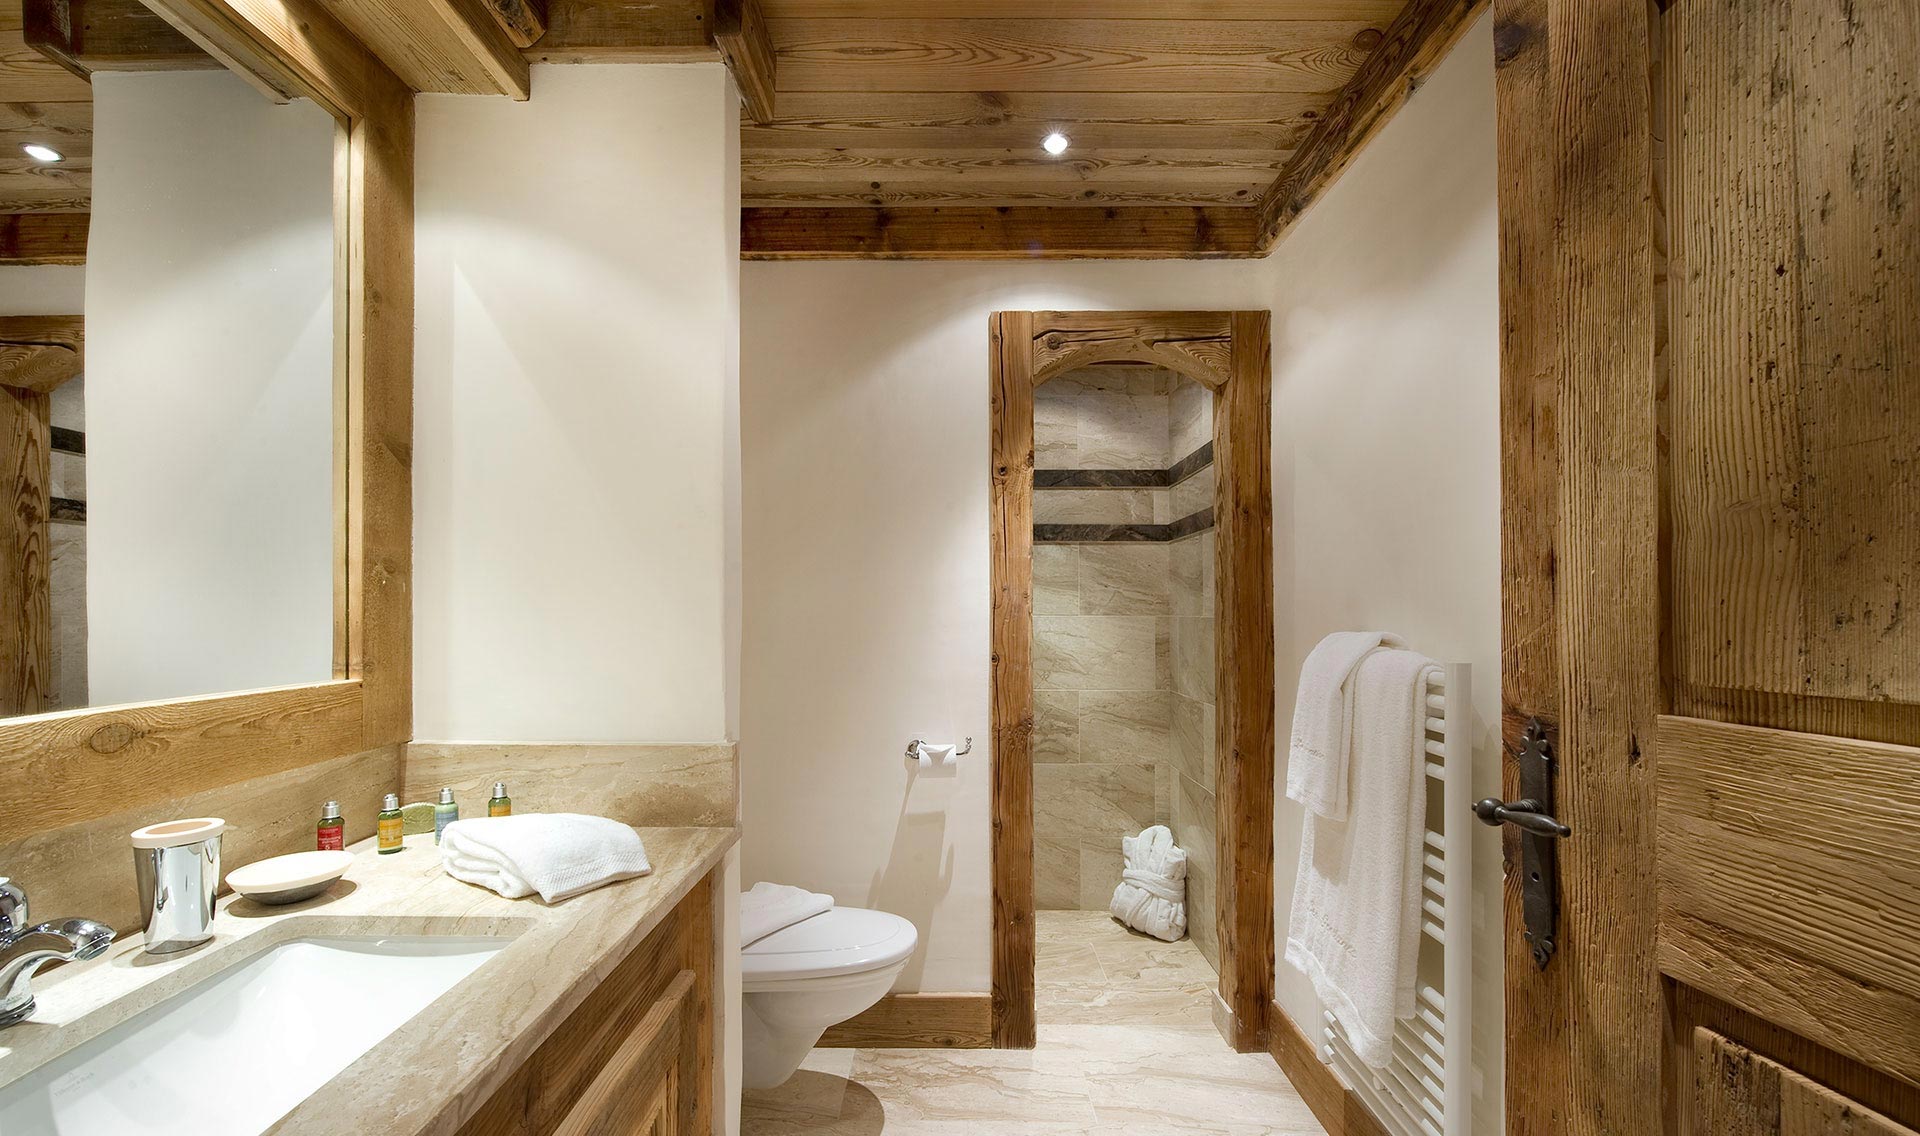 l'idée d'une belle conception de salle de bain dans une maison en bois